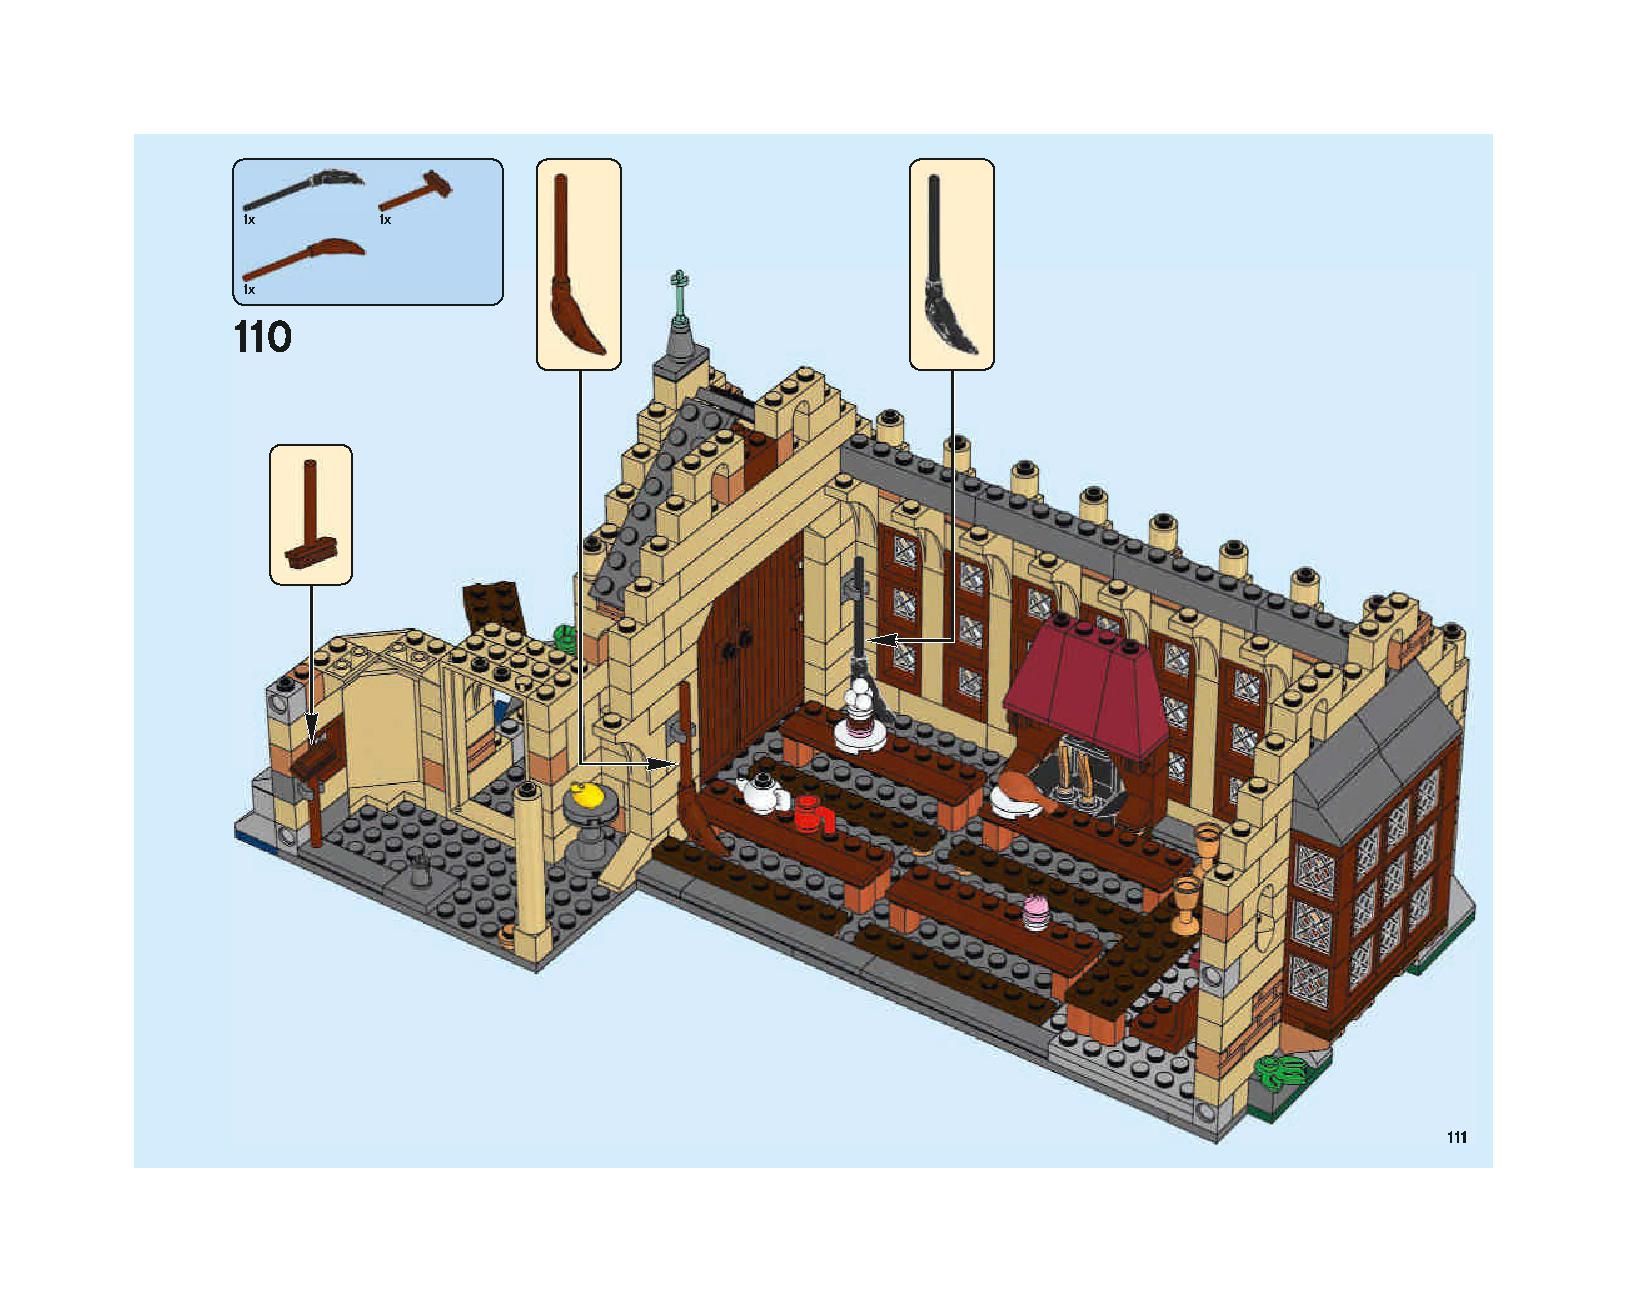 ホグワーツの大広間 75954 レゴの商品情報 レゴの説明書・組立方法 111 page